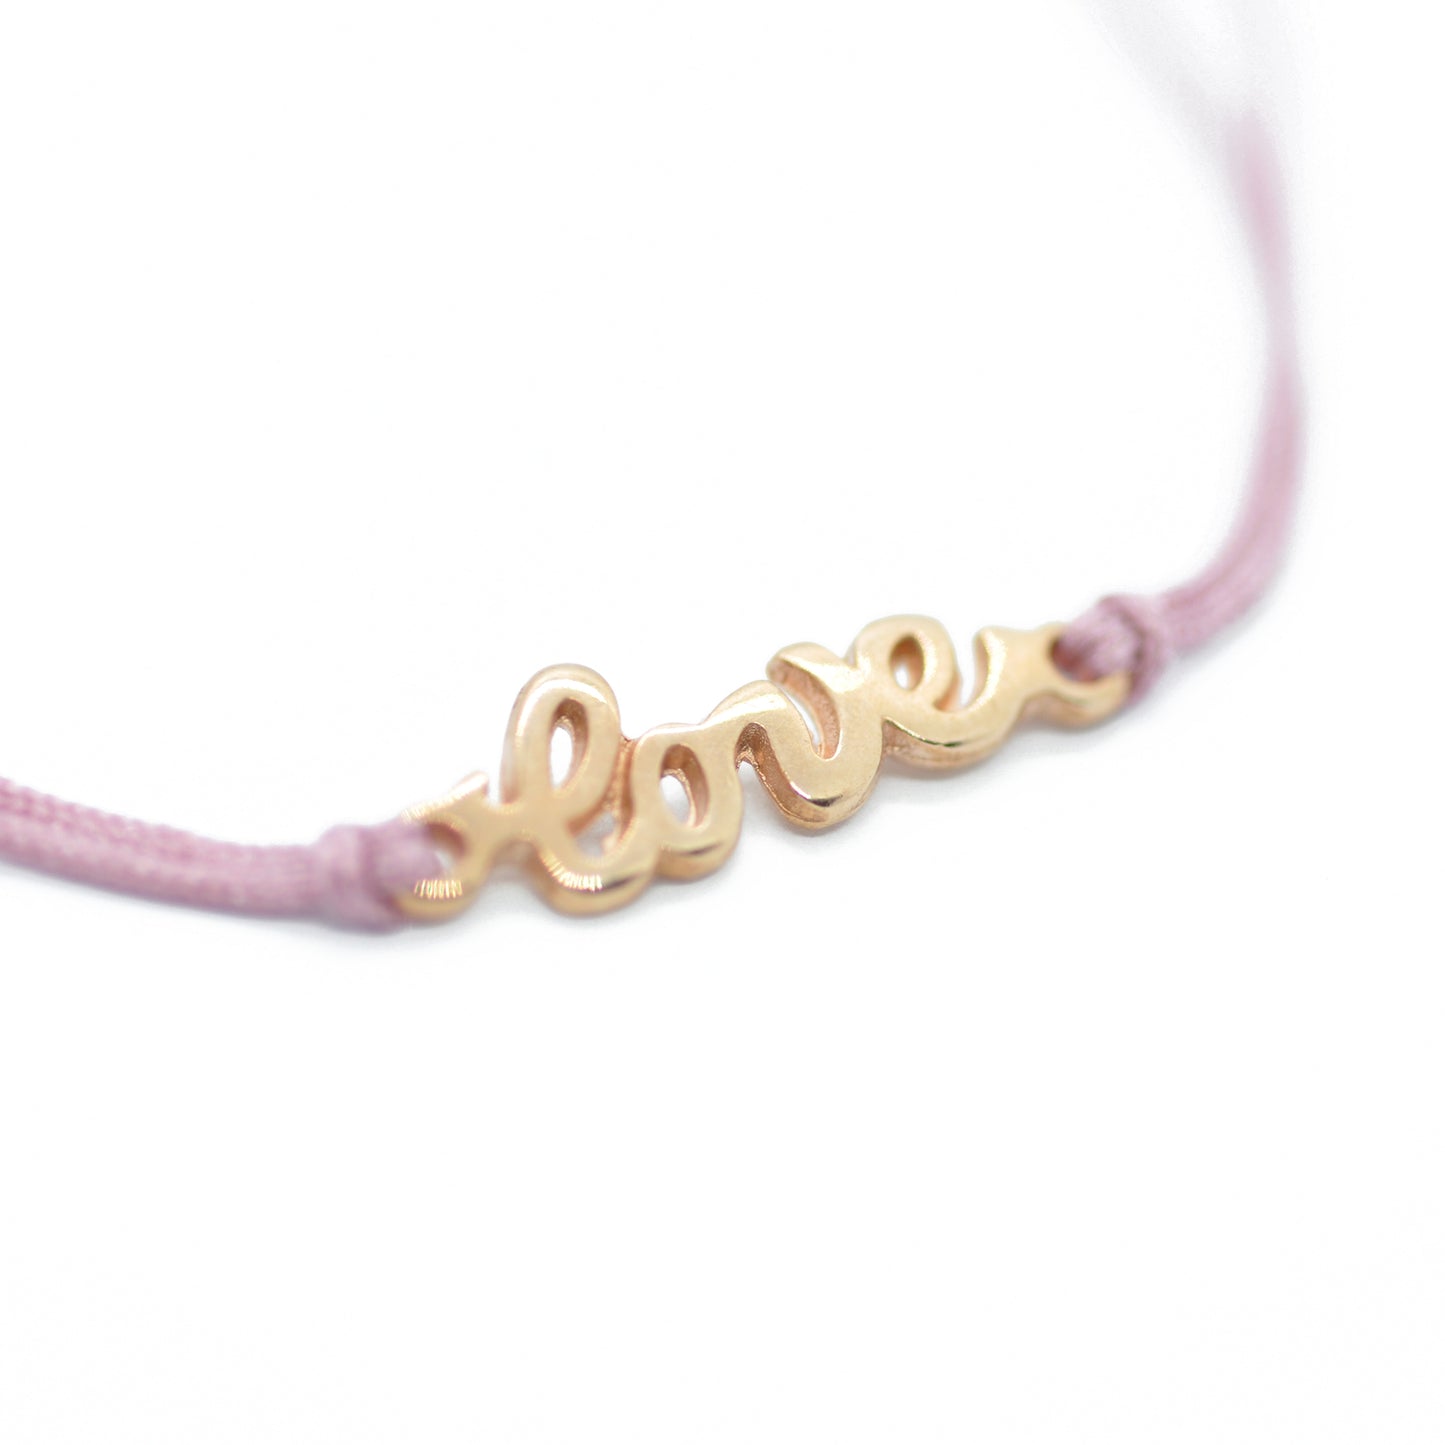 Bracelet Love / customizable